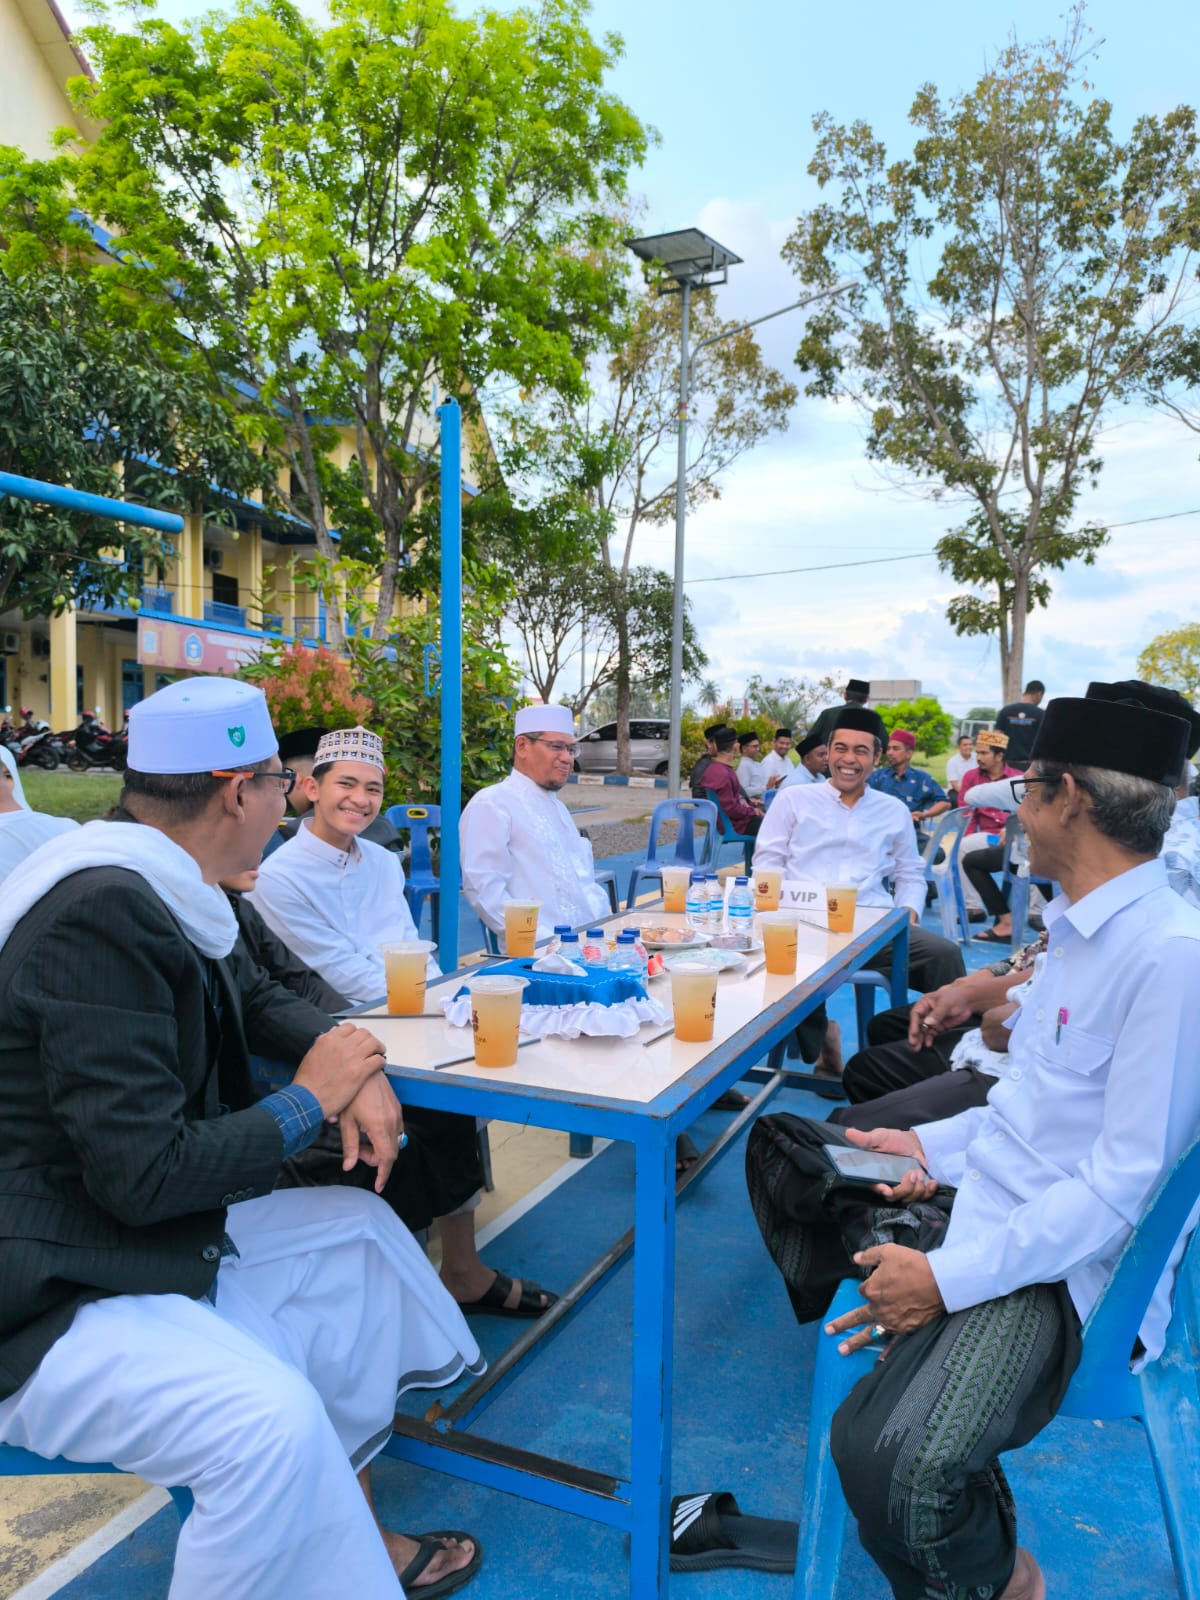 Buka Puasa Bersama Civitas Akademika IAI Almuslim Aceh 2024